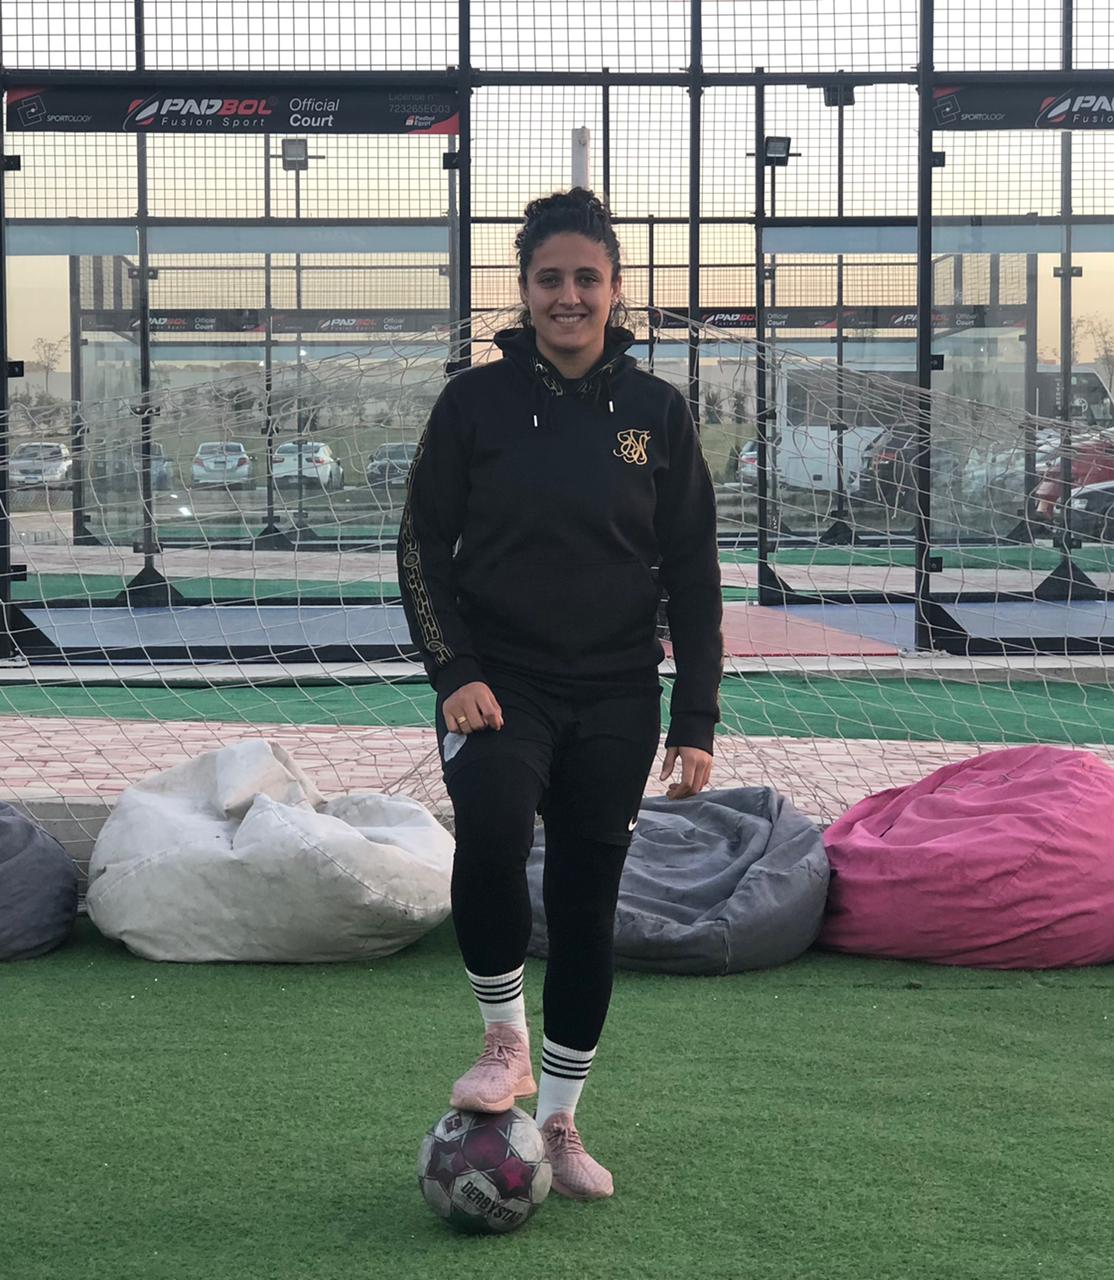 مهيرة علي لاعبة كرة قدم في منتخب مصر الأول لكرة القدم النسائية